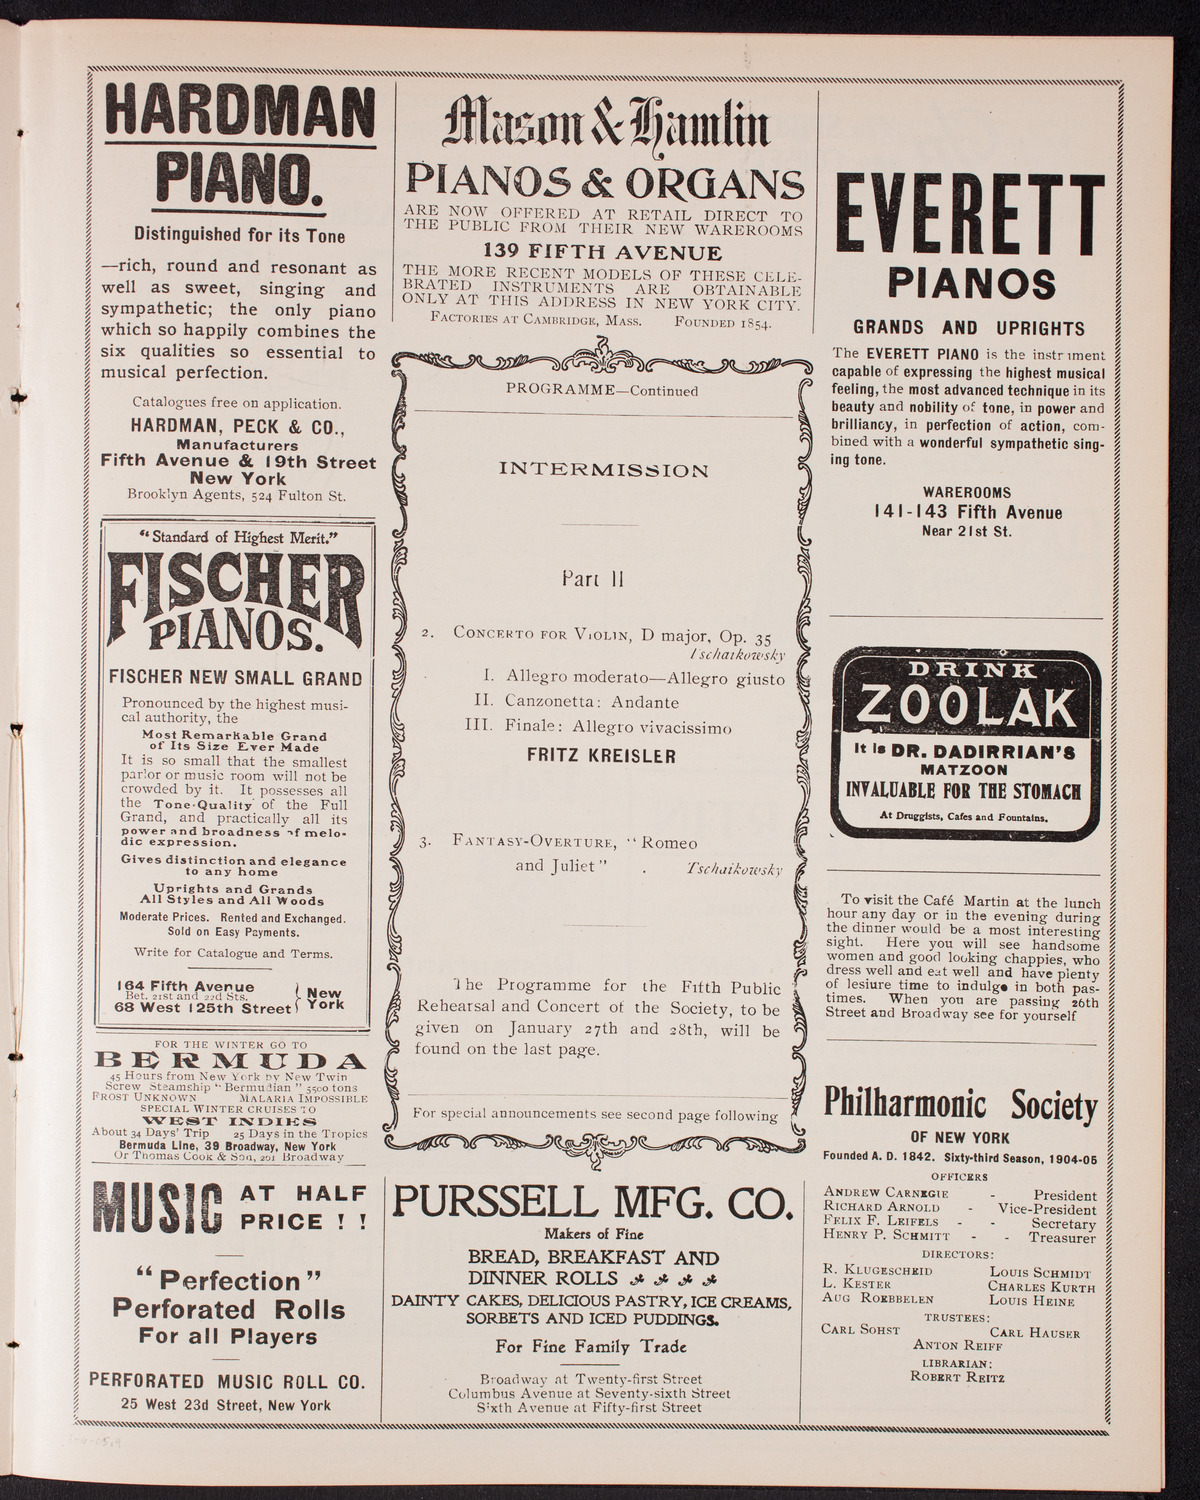 New York Philharmonic, January 6, 1905, program page 7